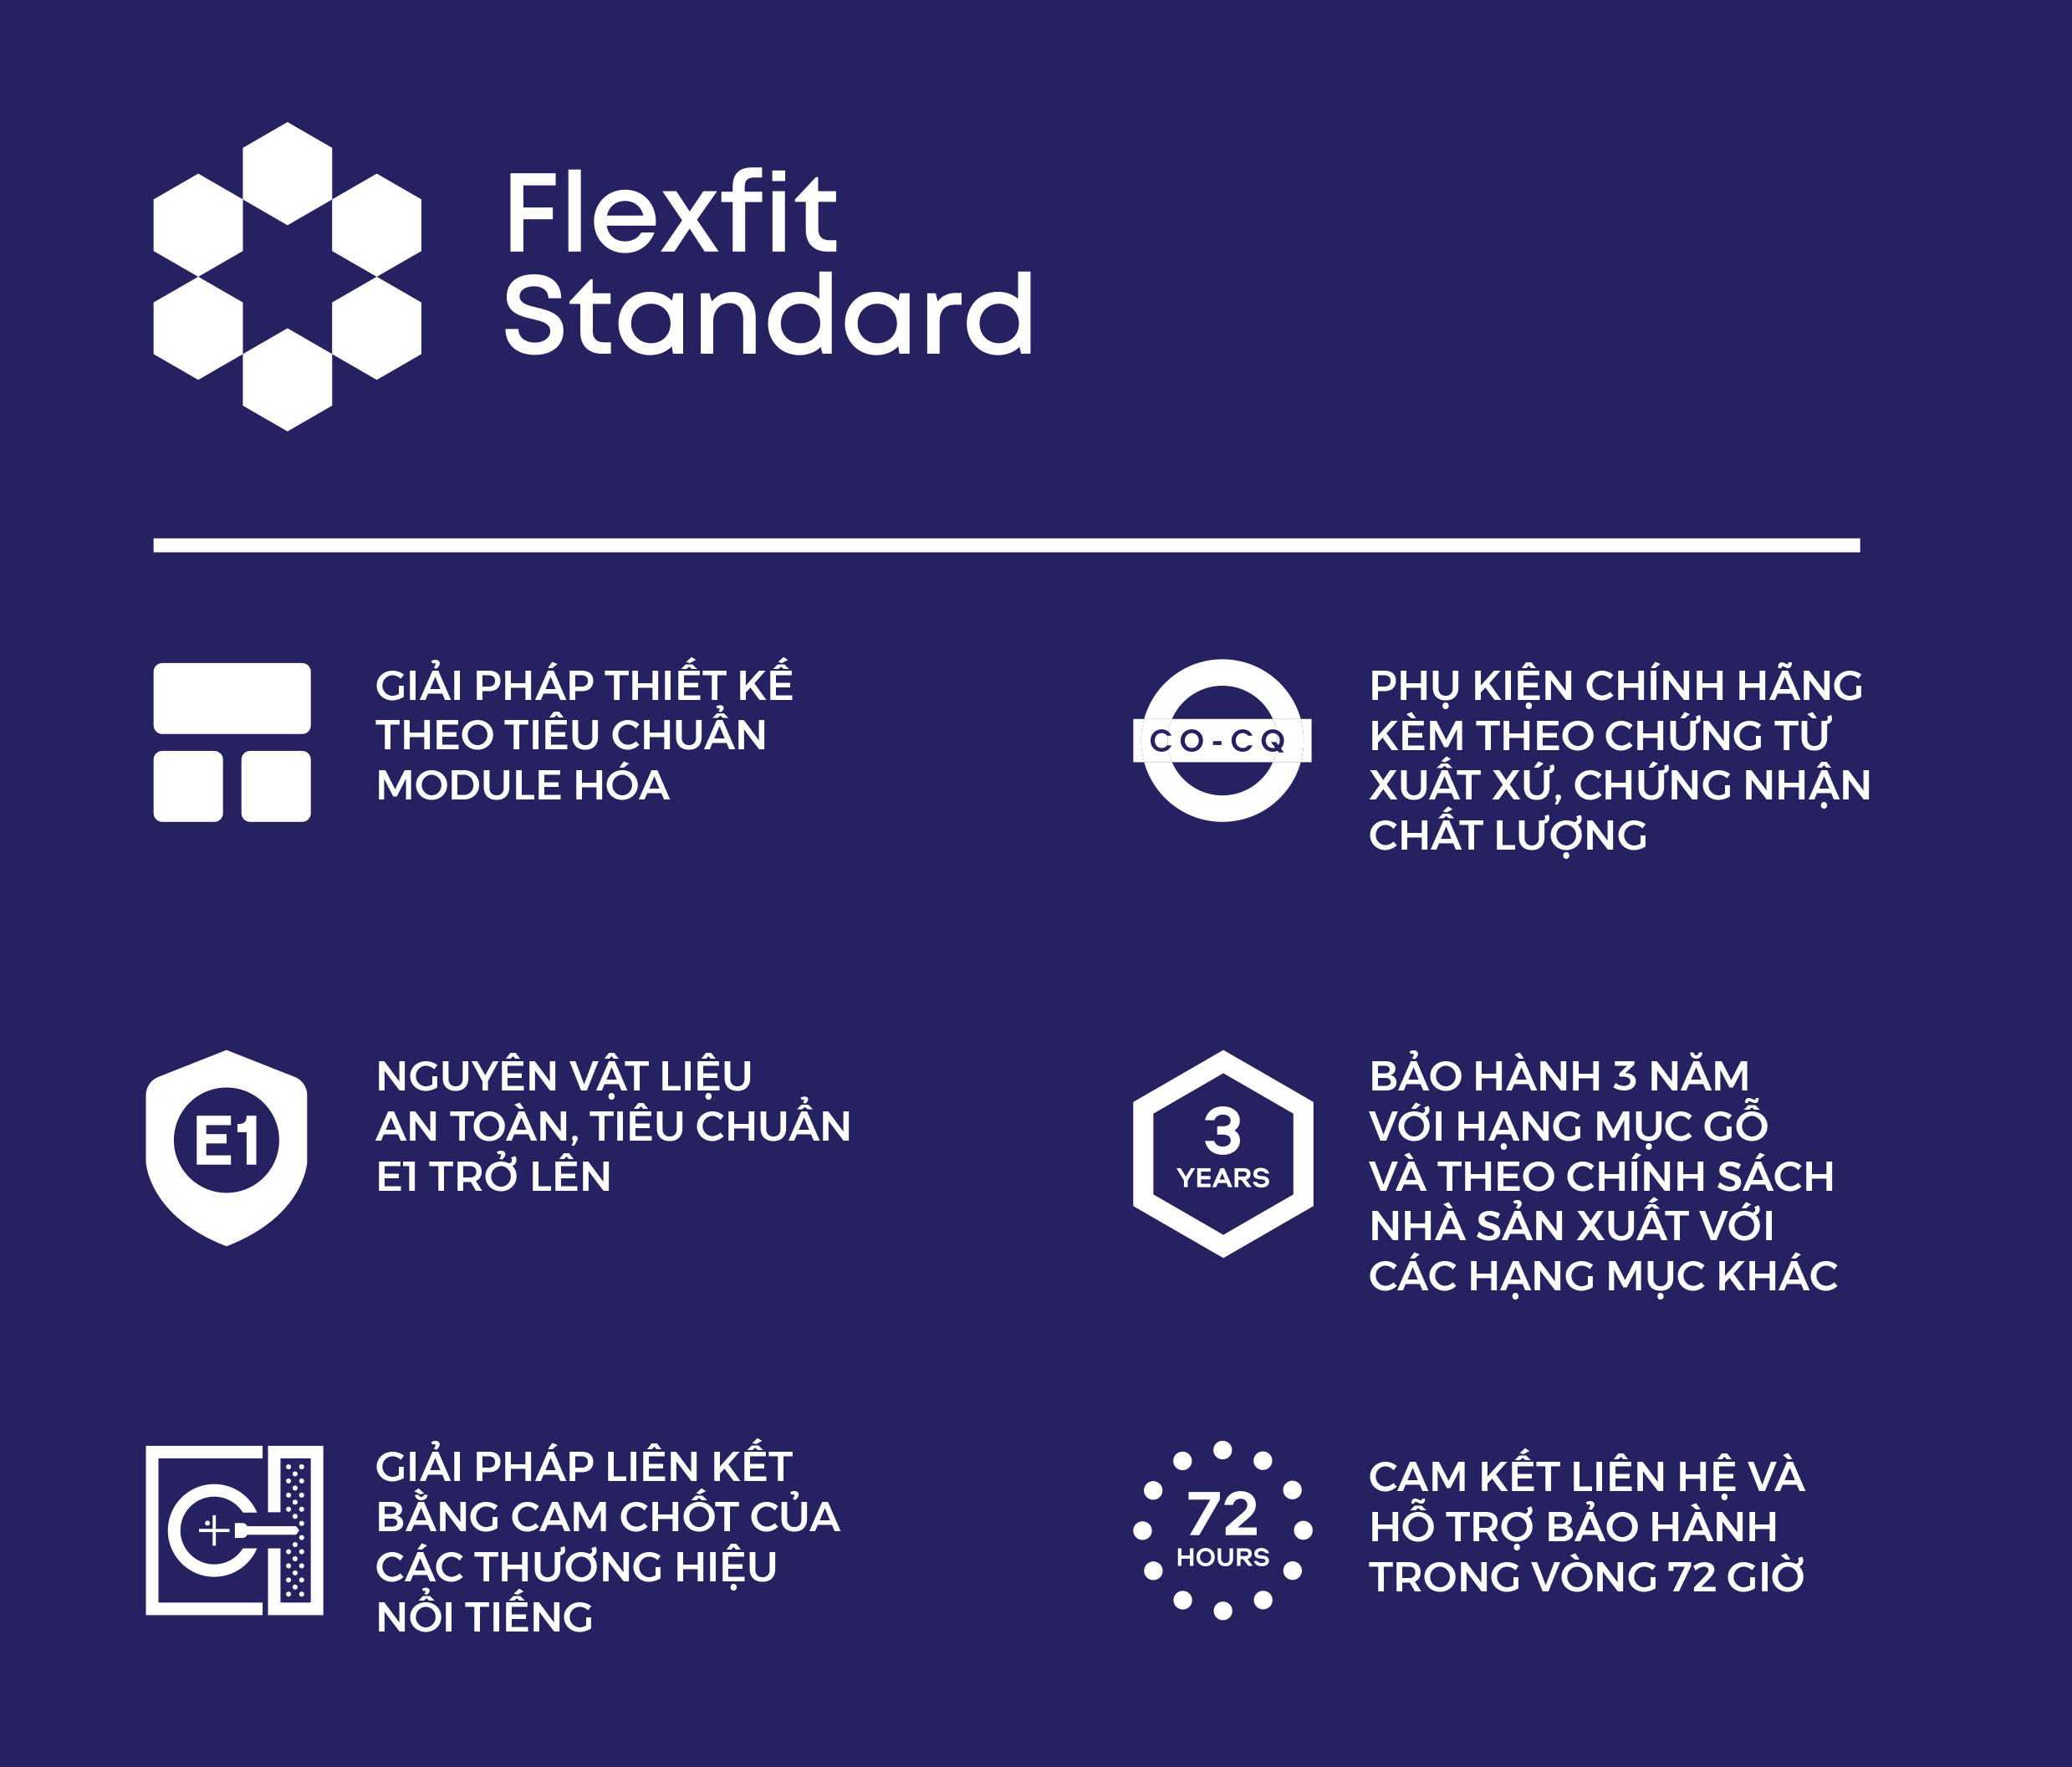 Flexfit đạt chất lượng theo chuẩn giá trị ngành nội thất